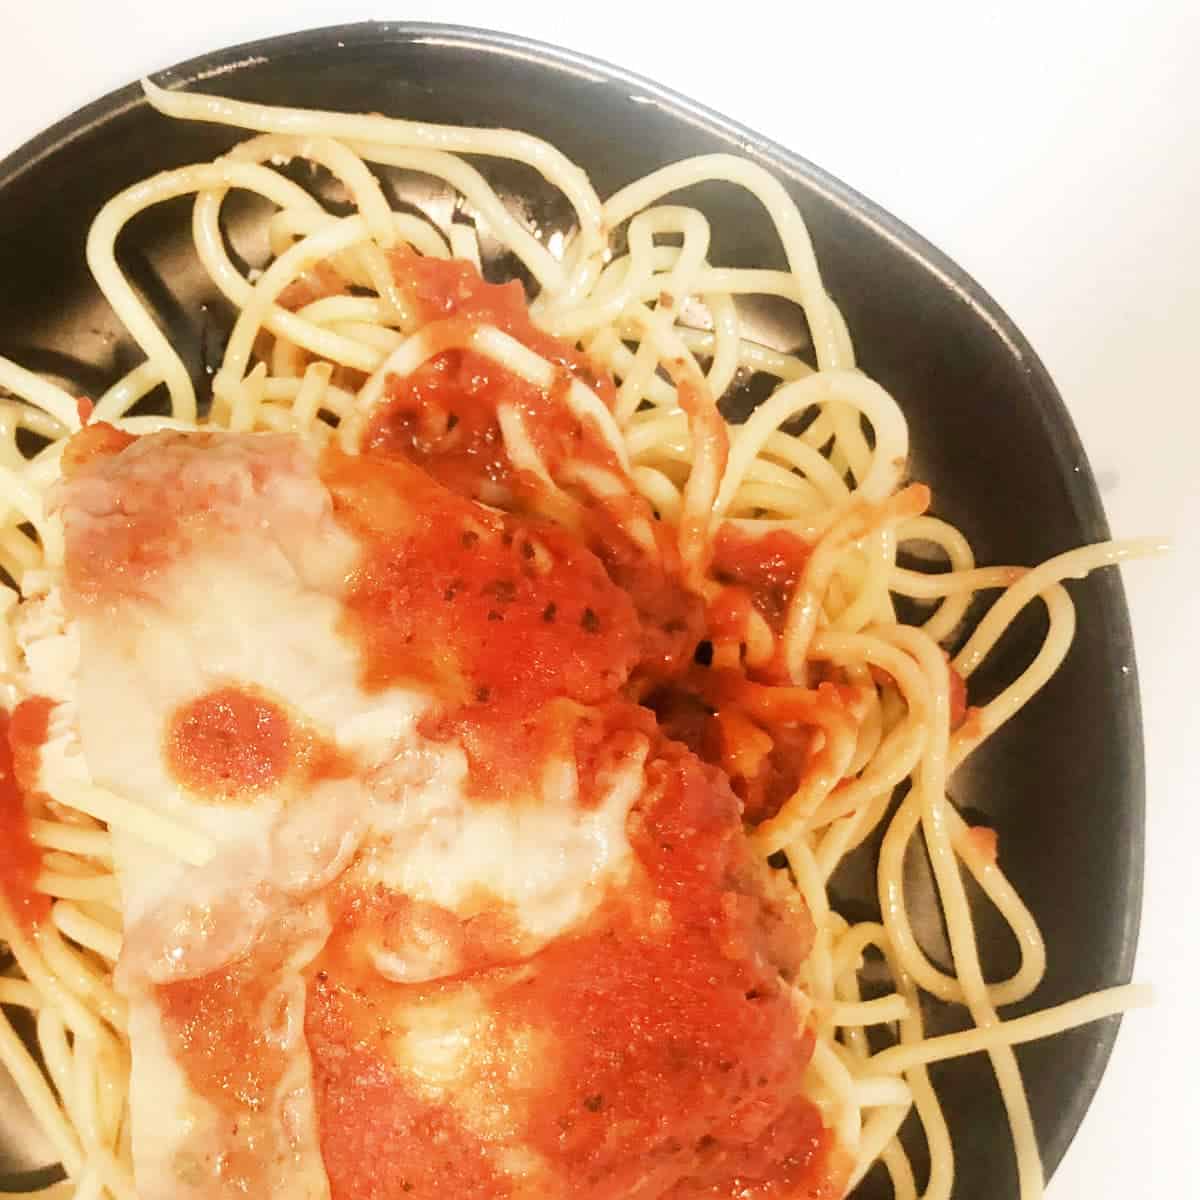 chicken parm over pasta